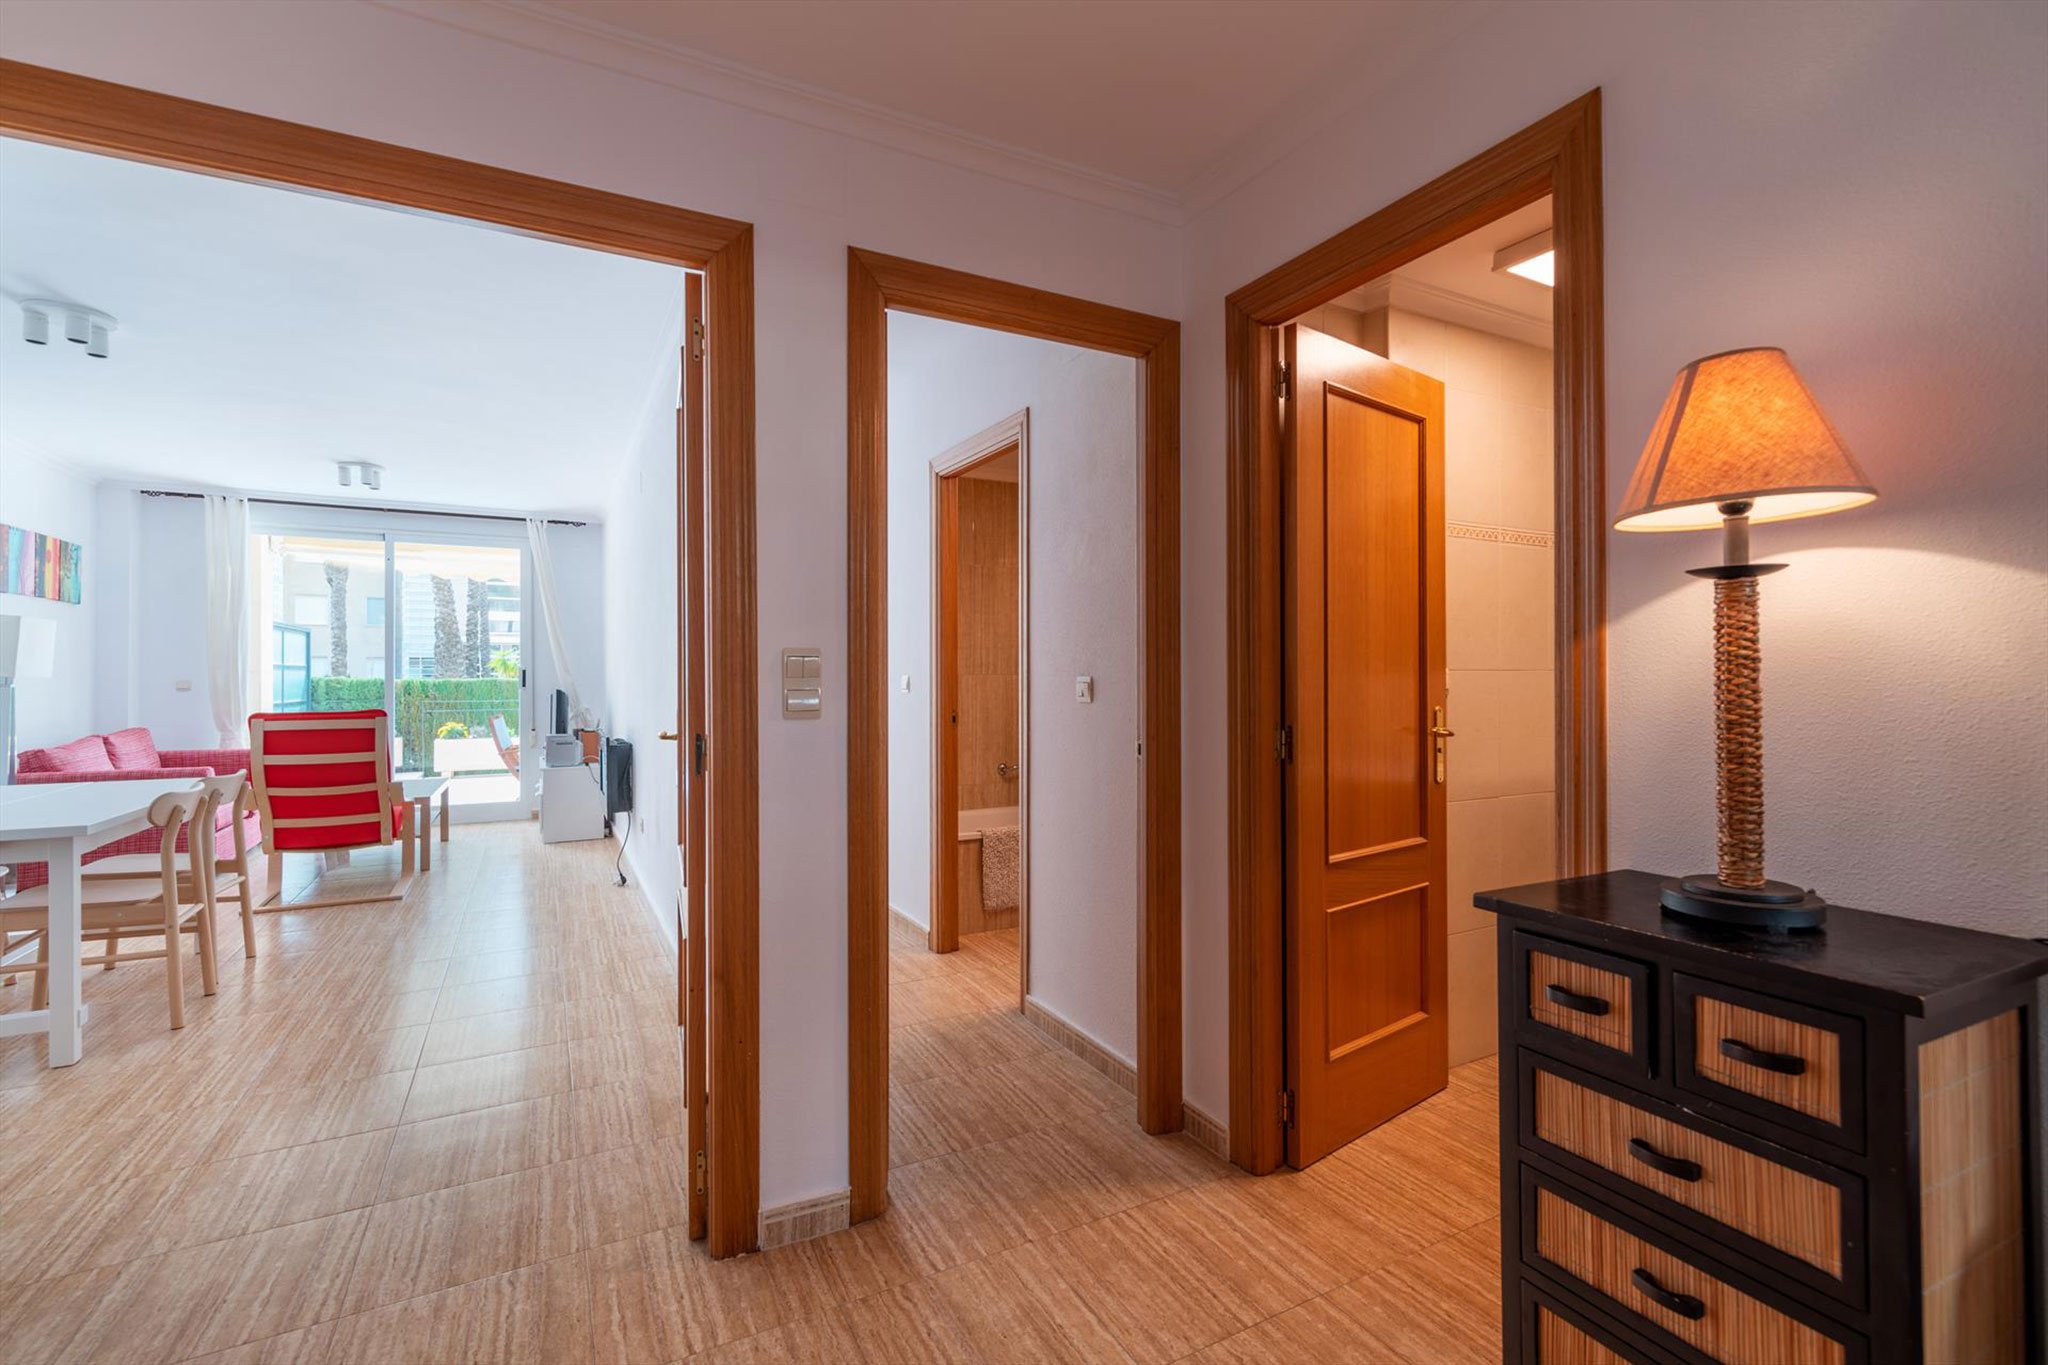 Distribuidor de un apartamento de vacaciones en Jávea con capacidad para cuatro personas – Quality Rent a Villa